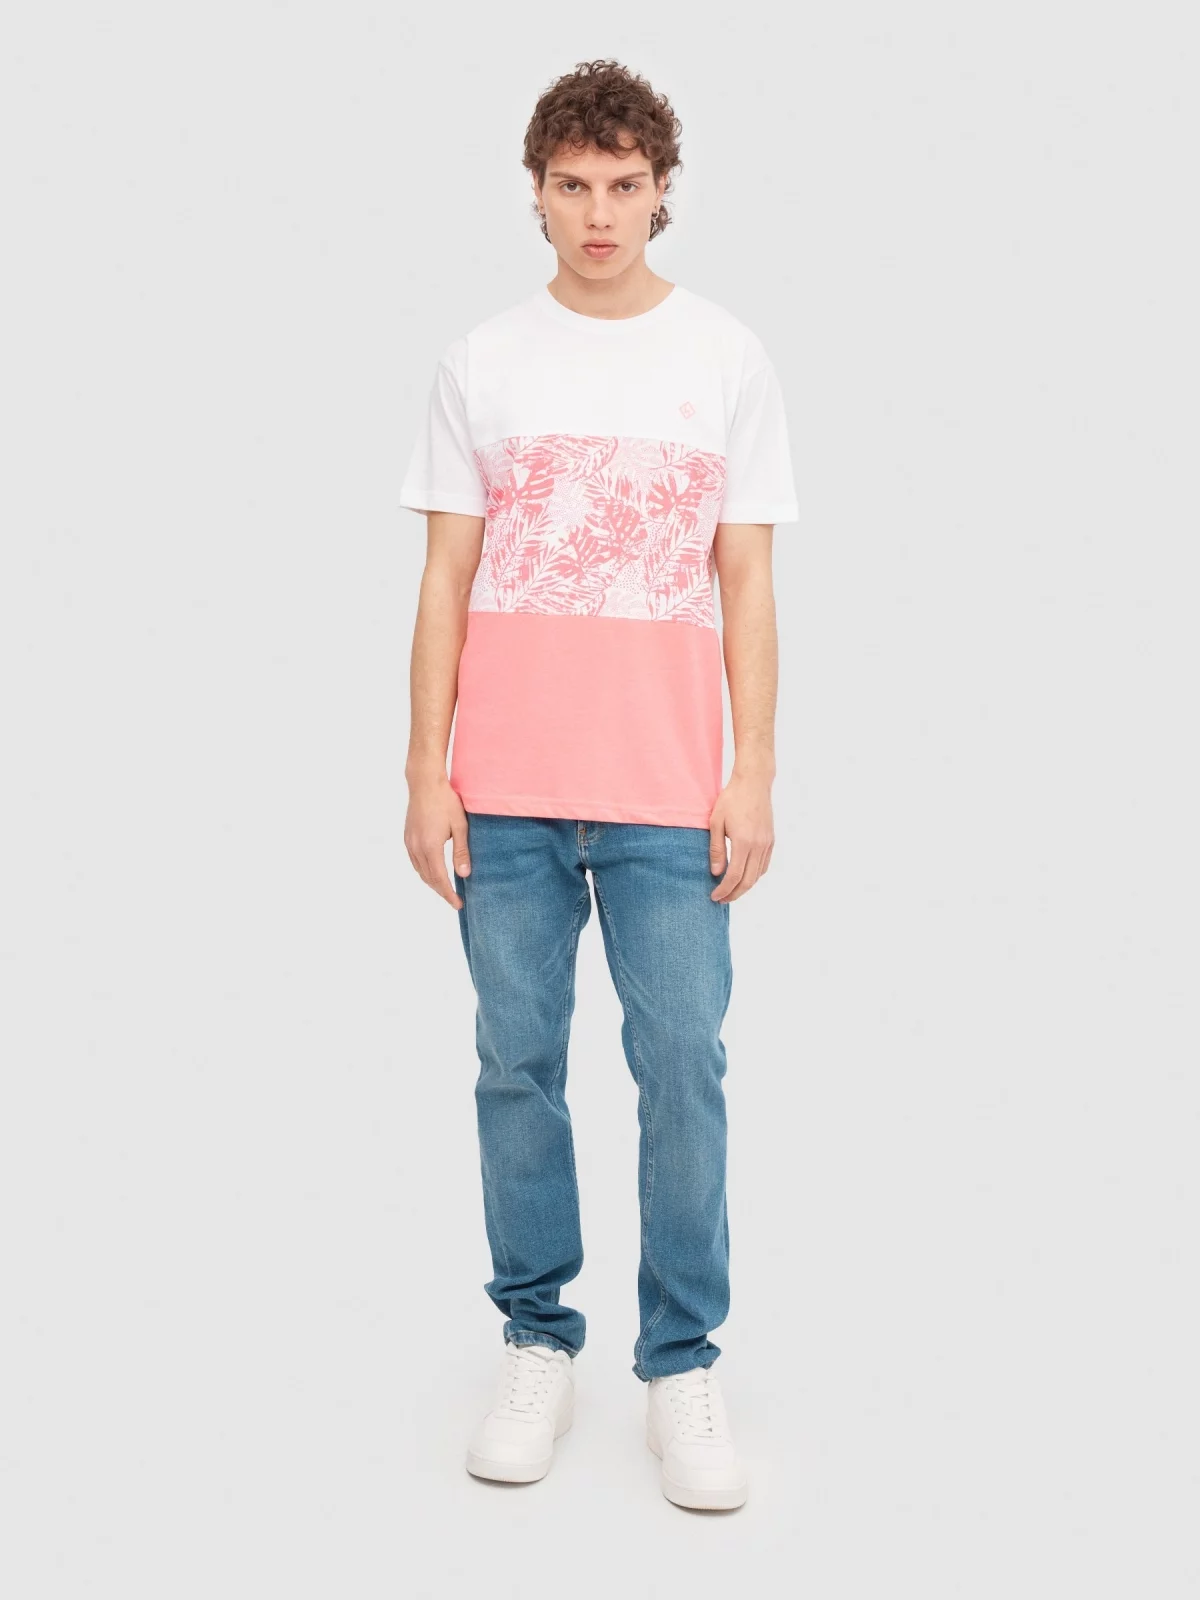 Camiseta tropical textura rosa vista general frontal